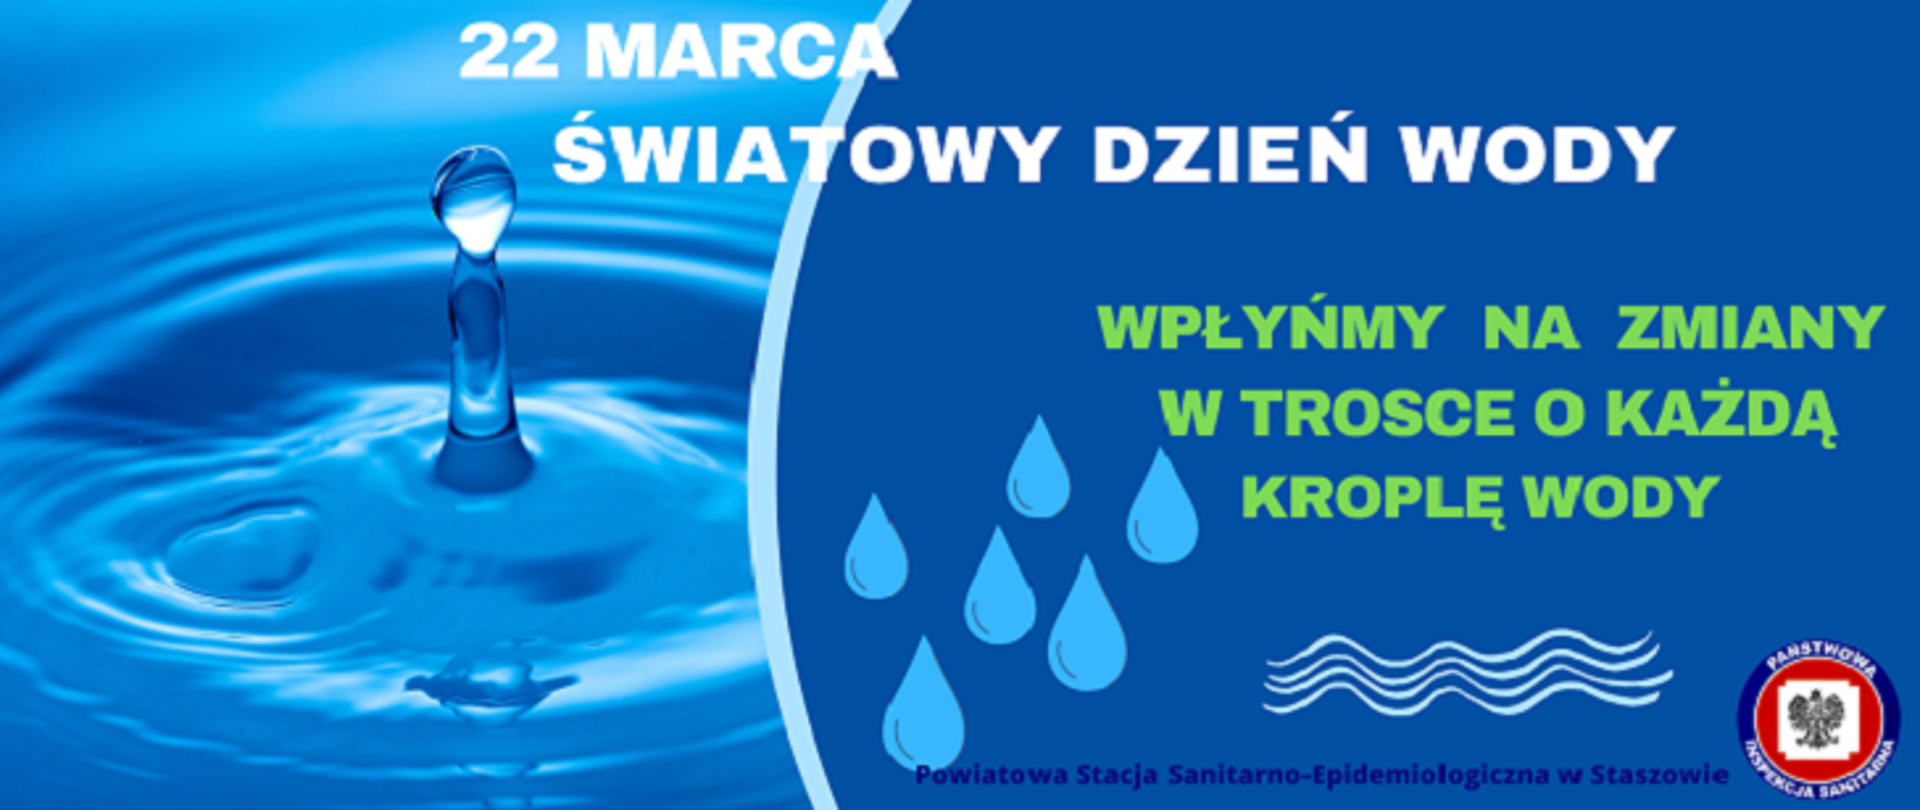 Zdjęcie przedstawia hasło kampanii "22 Światowy dzień wody wpłyńmy na zmiany w trosce o każdą kroplę wody"